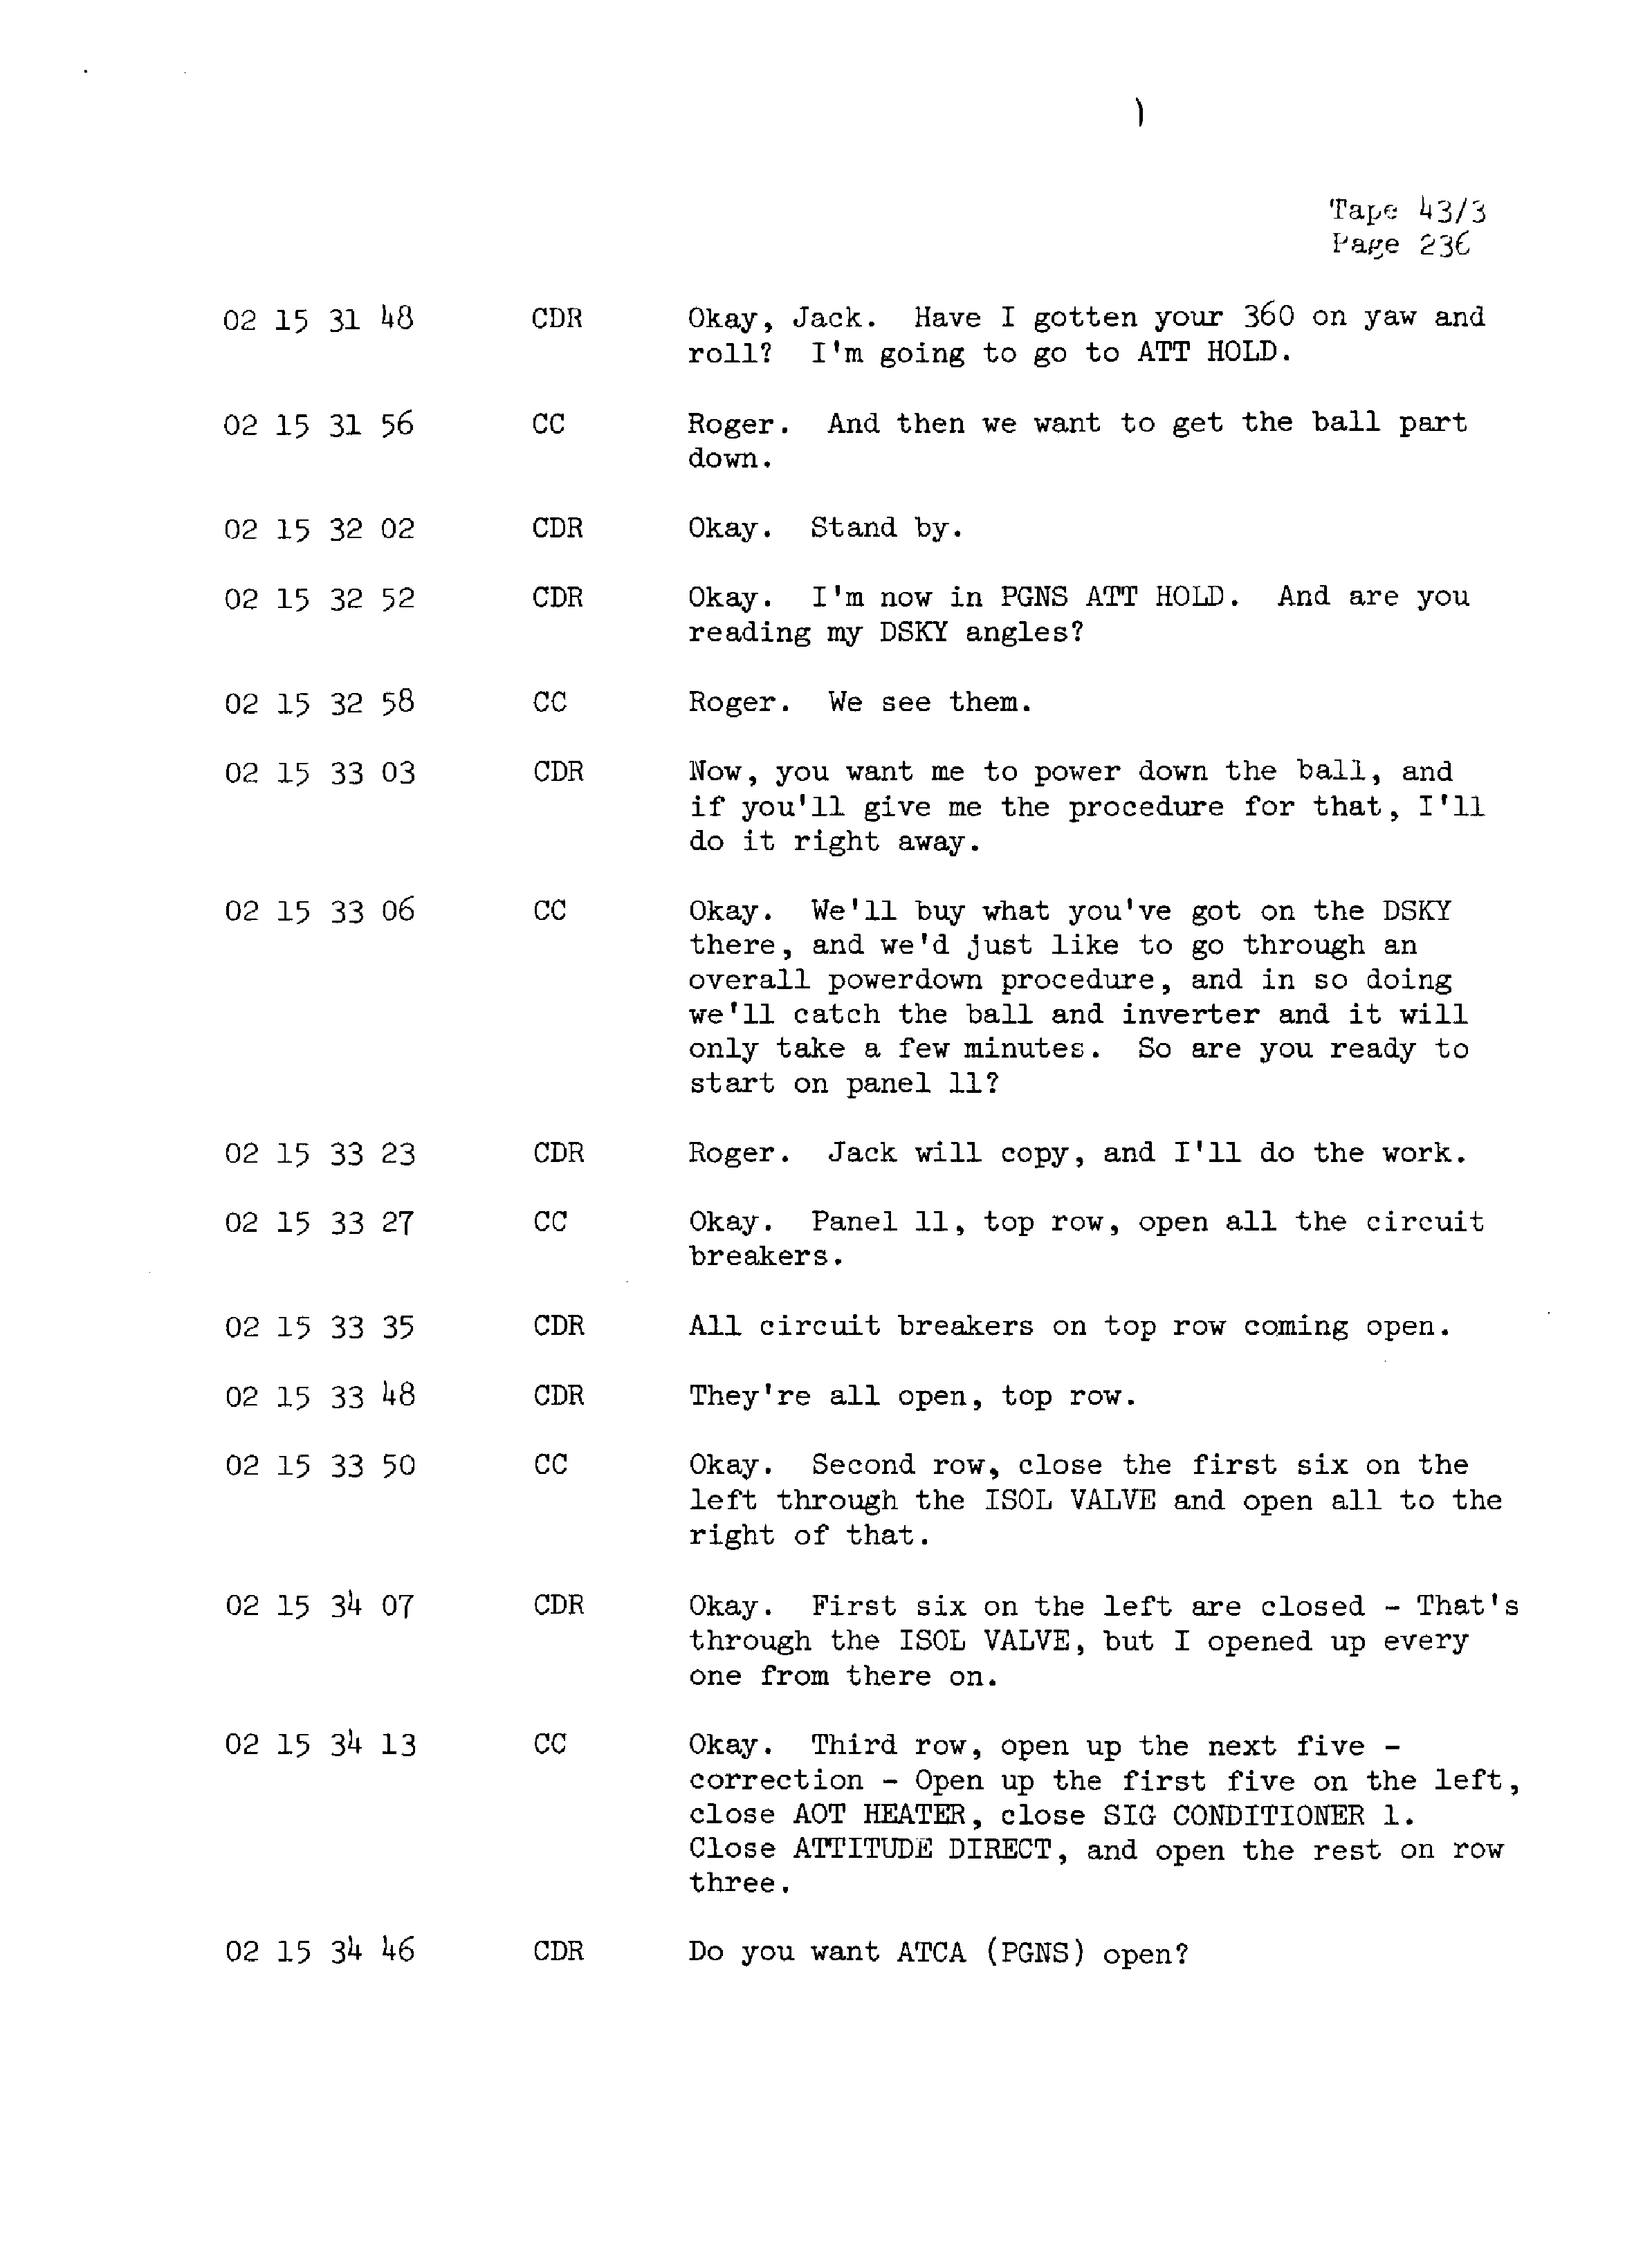 Page 243 of Apollo 13’s original transcript